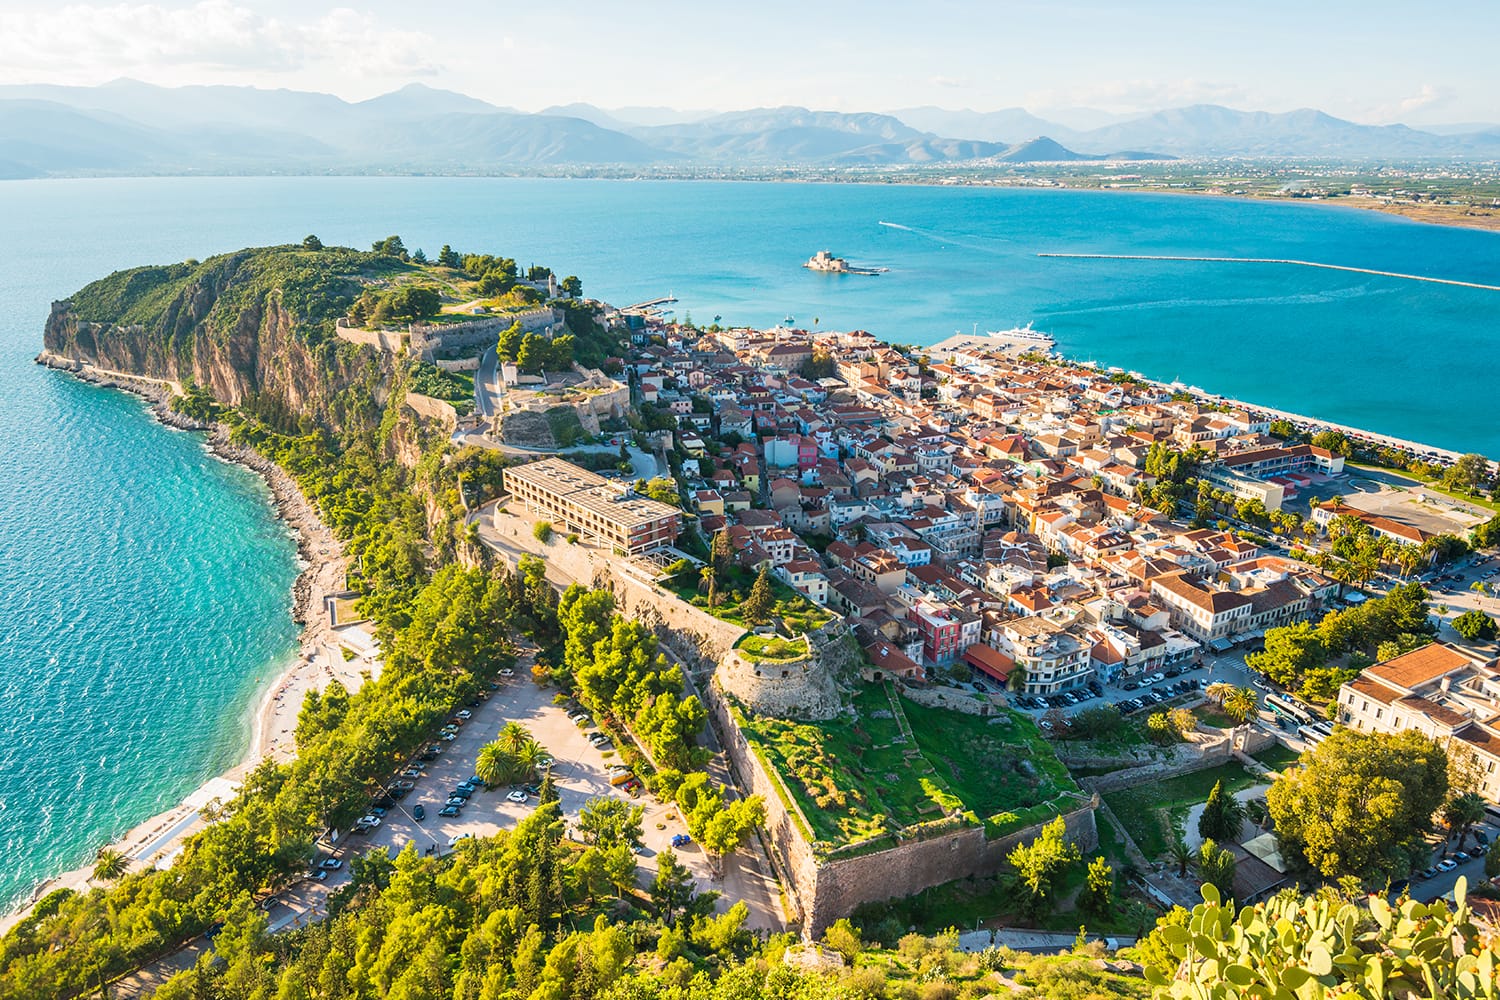 Πράσινη χερσόνησος με την πόλη του Ναυπλίου στην Ελλάδα από ψηλά με τη γαλάζια θάλασσα της Μεσογείου, τις στέγες της παλιάς πόλης και το μικρό λιμάνι